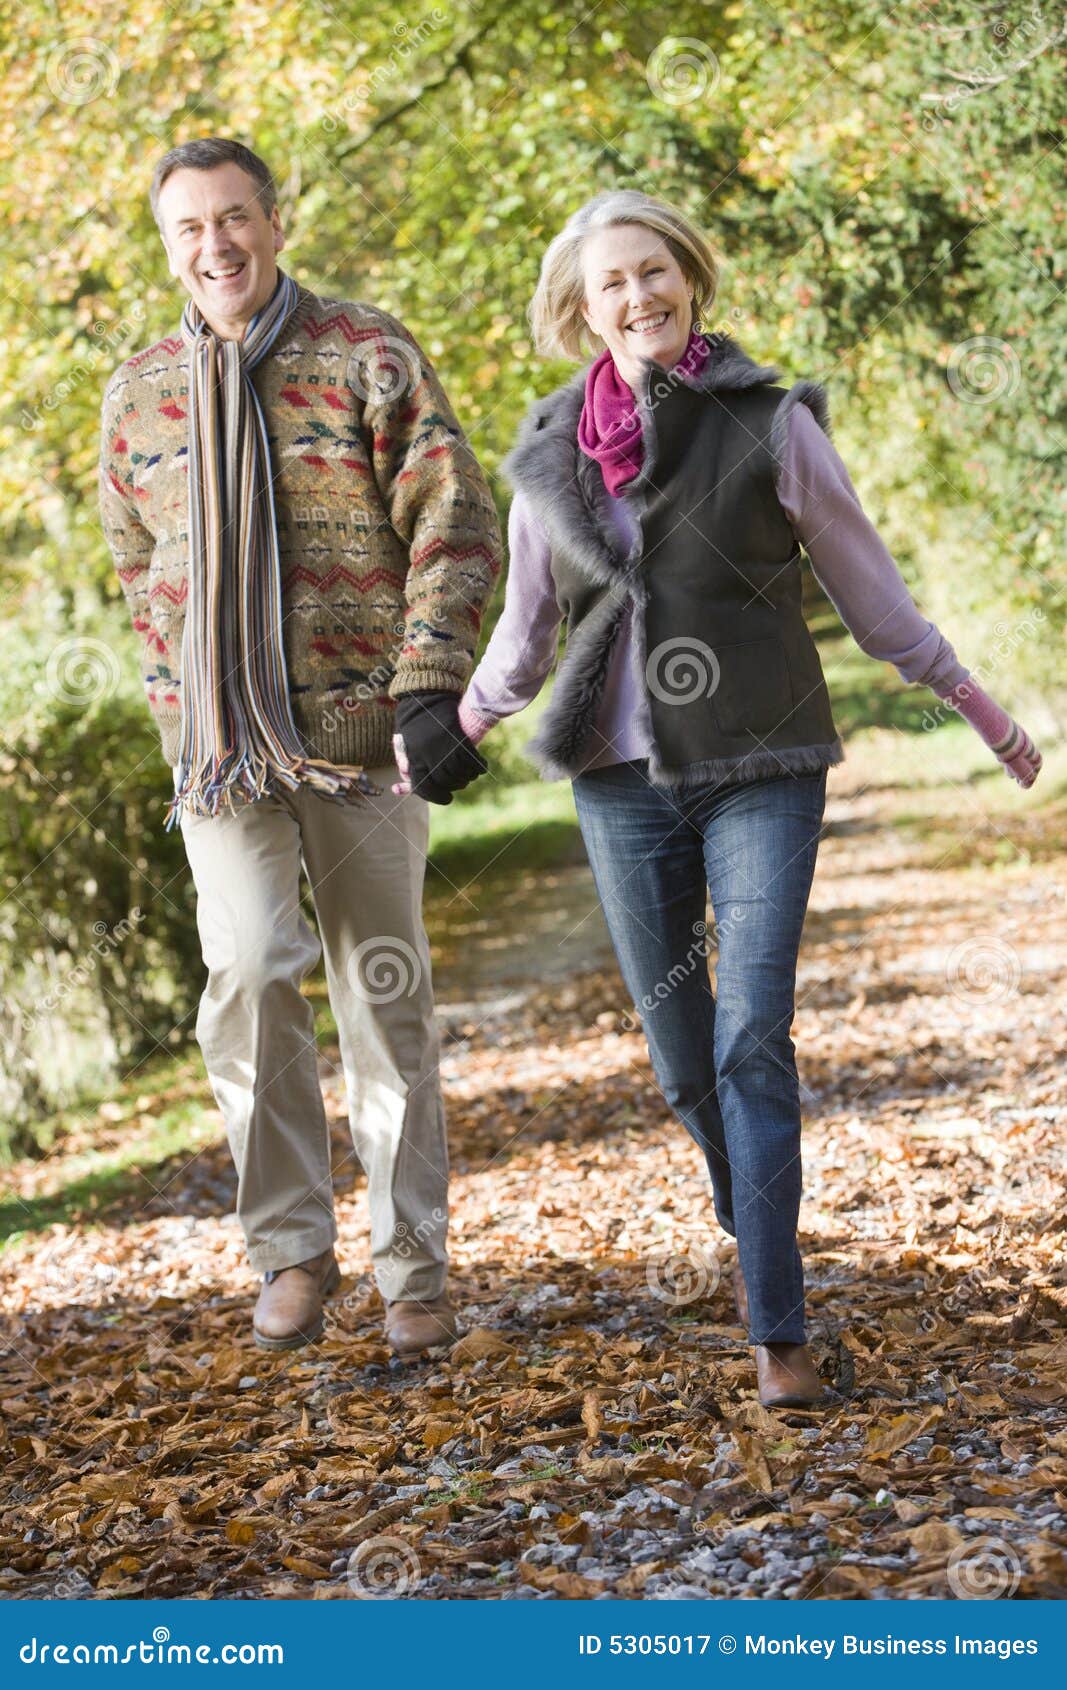 senior couple walking through autumn woods